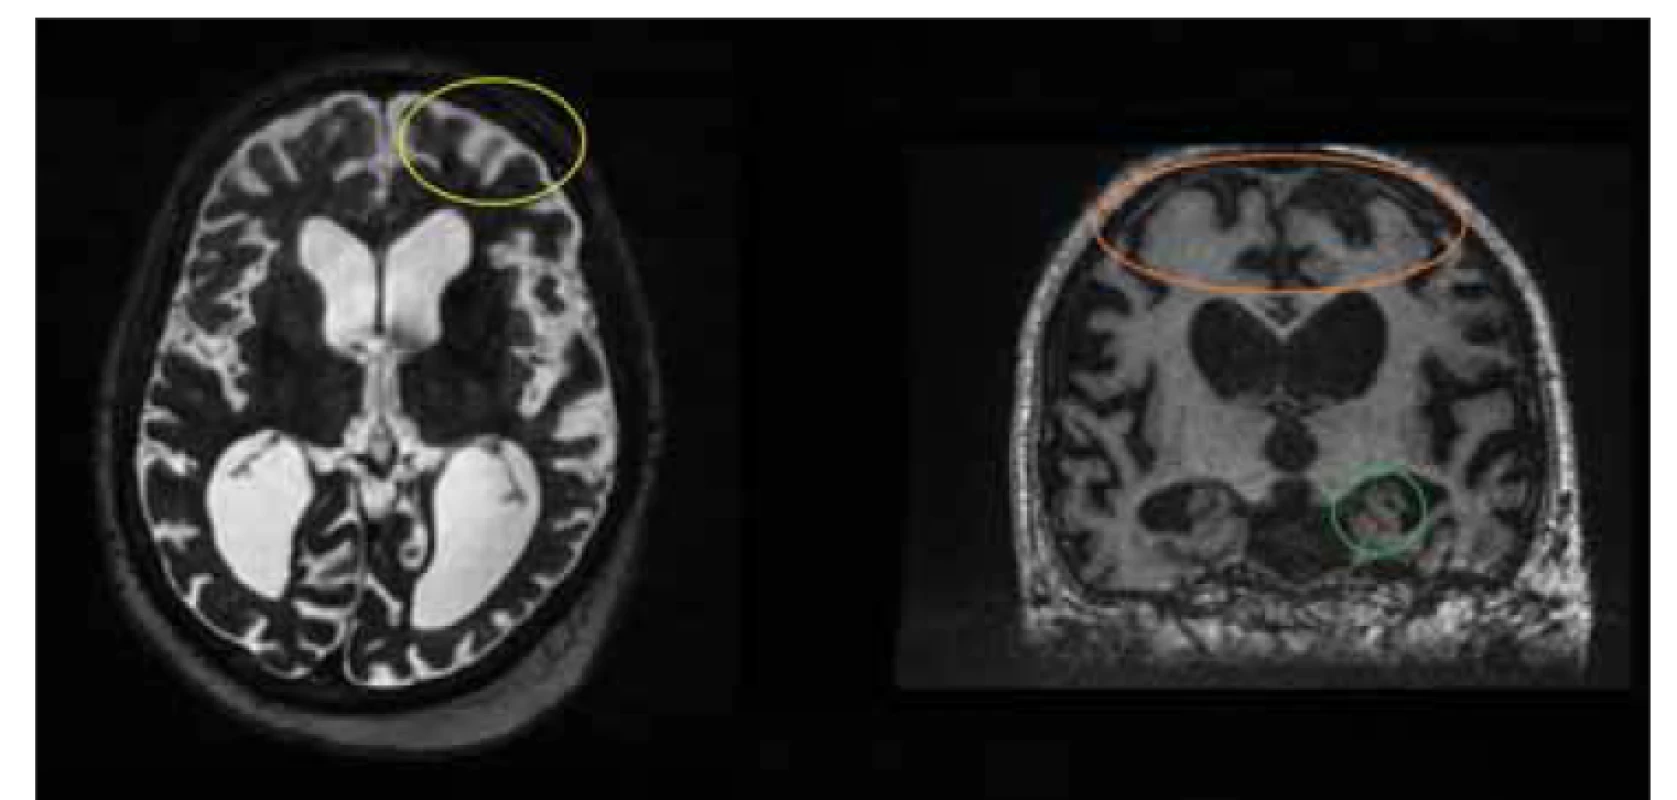 MR, T2-vážený obraz, axiální rovina, T1-vážený obraz, frontální rovina. Pacient v
rámci vyšetřování pro suspektní idiopatický normotenzní hydrocefalus. Klinické symptomy
nasvědčovaly spíše Alzheimerově chorobě. Funkční testování bylo negativní. Pacientovi
byla posléze diagnostikována Alzheimerova choroba. Povšimněte si kortikální
atrofie (žlutý kruh), atrofie hippocampu (zelený kruh) a volných subarachnoidálních prostor
na konvexitách (oranžový kruh).<br>
Fig. 7. MRI, T2-weighted image, axial plane, T1-weighted image, coronal plane. Patient
under testing for suspected idiopathic normal pressure hydrocephalus. Clinical symptoms
were more indicative of Alzheimer‘s disease. Functional testing was negative. The
patient was subsequently diagnosed with Alzheimer‘s disease. Note the cortical atrophy
(yellow circle), hippocampal atrophy (green circle), and free subarachnoid spaces on
convexities (orange circle).